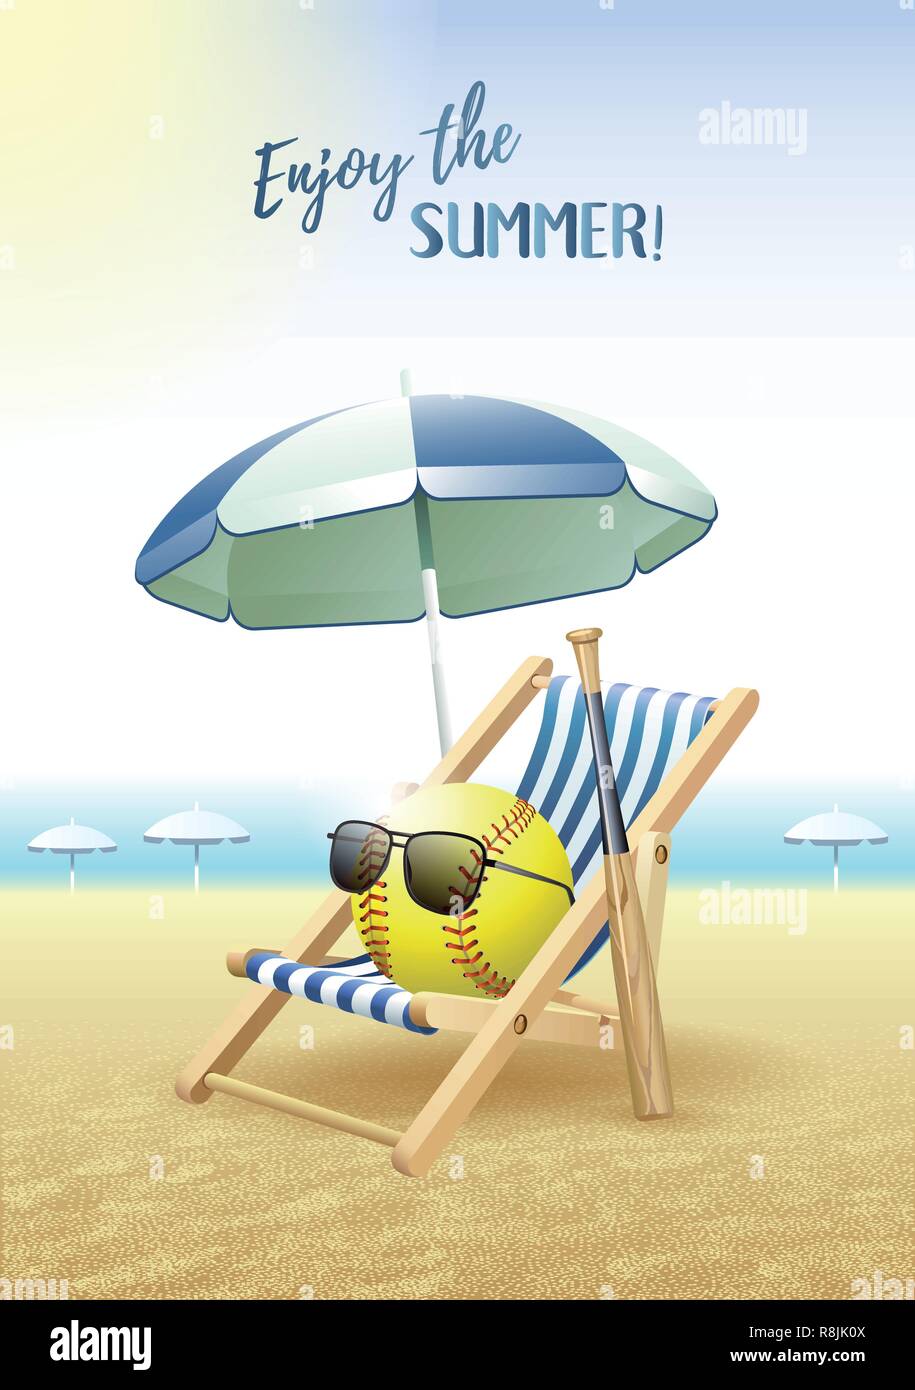 Genießen Sie den Sommer! Sport Karte. Softball Ball mit Sonnenbrille, Sonnenschirm, Liegestuhl und hölzerne Fledermaus auf dem Sandstrand. Vector Illustration. Stock Vektor